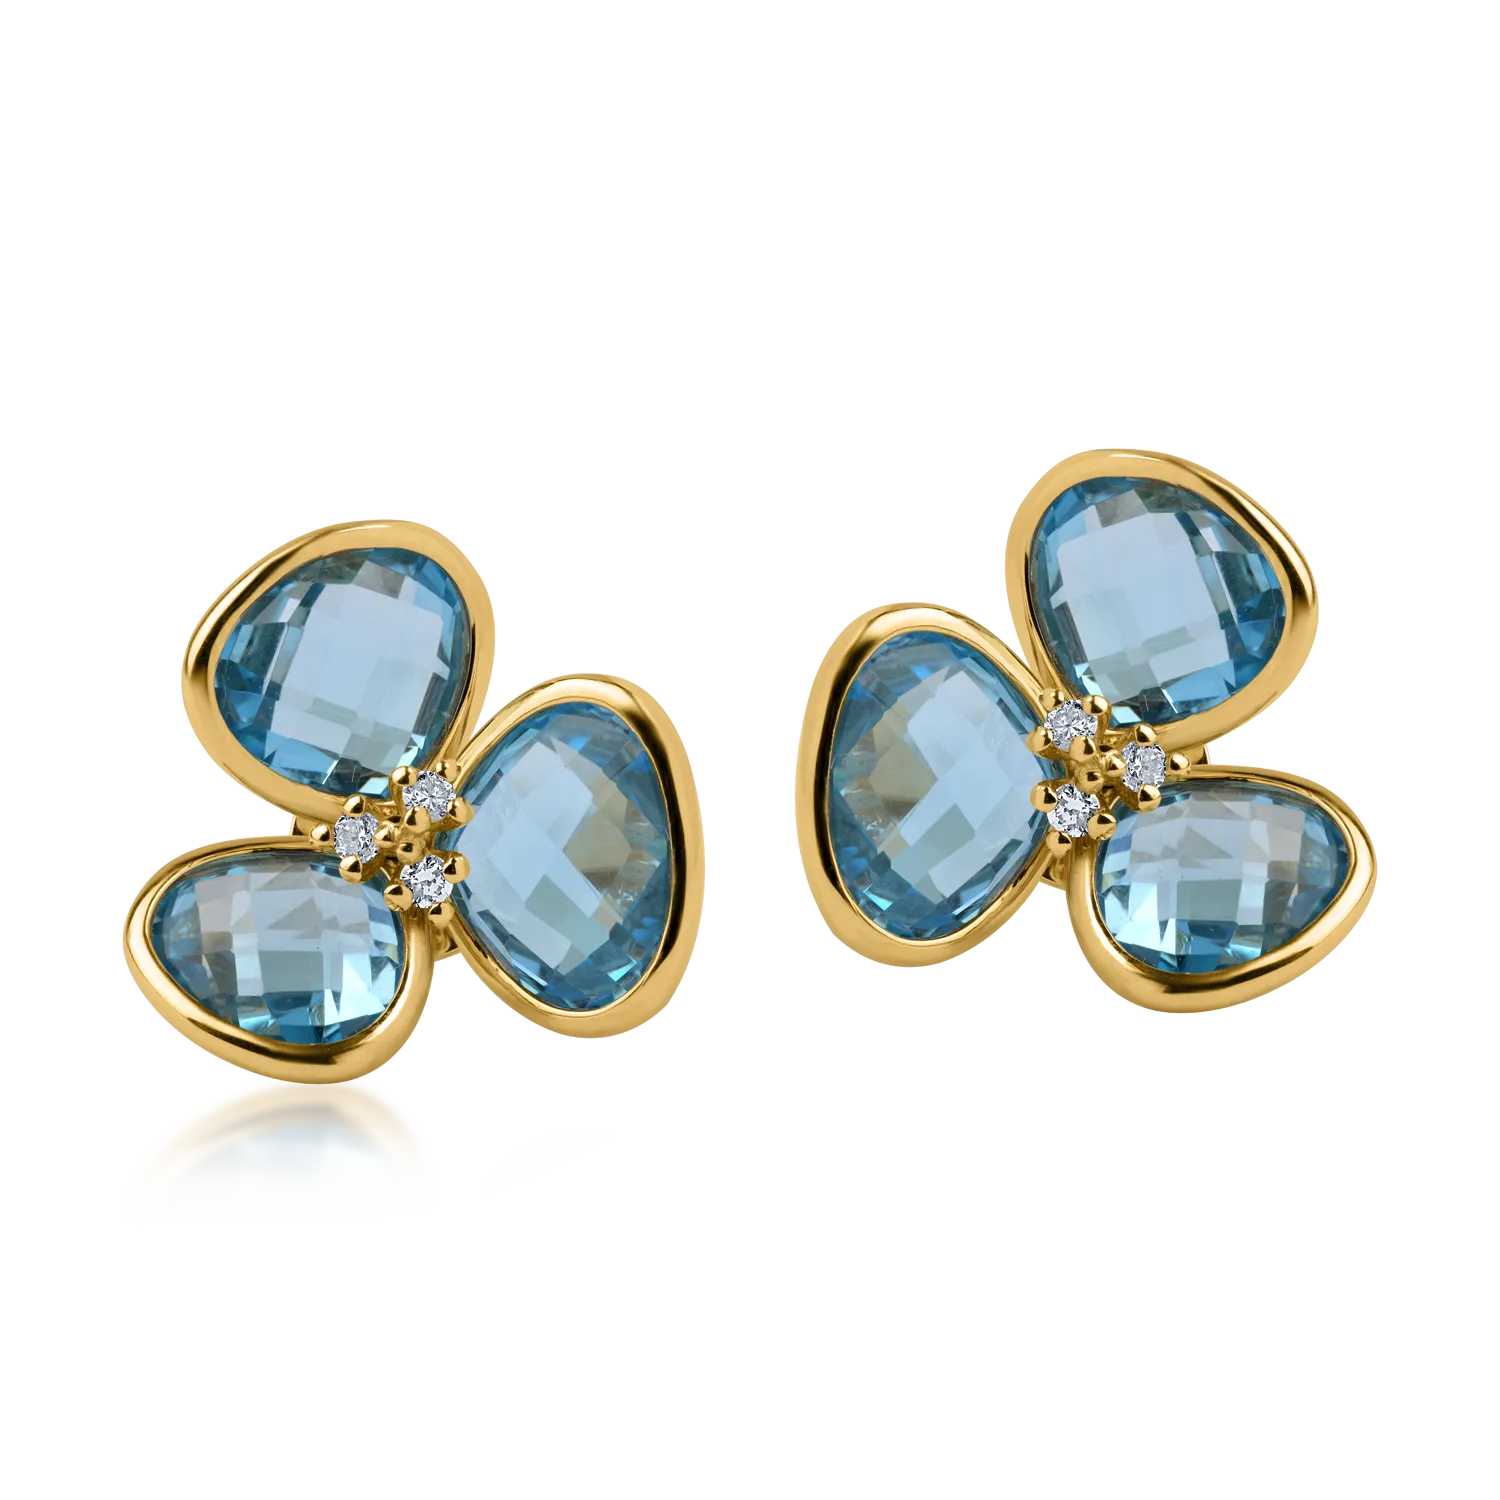 Sárga arany virágos fülbevaló 10.3ct kék topázokkal és 0.09 ct gyémántokkal